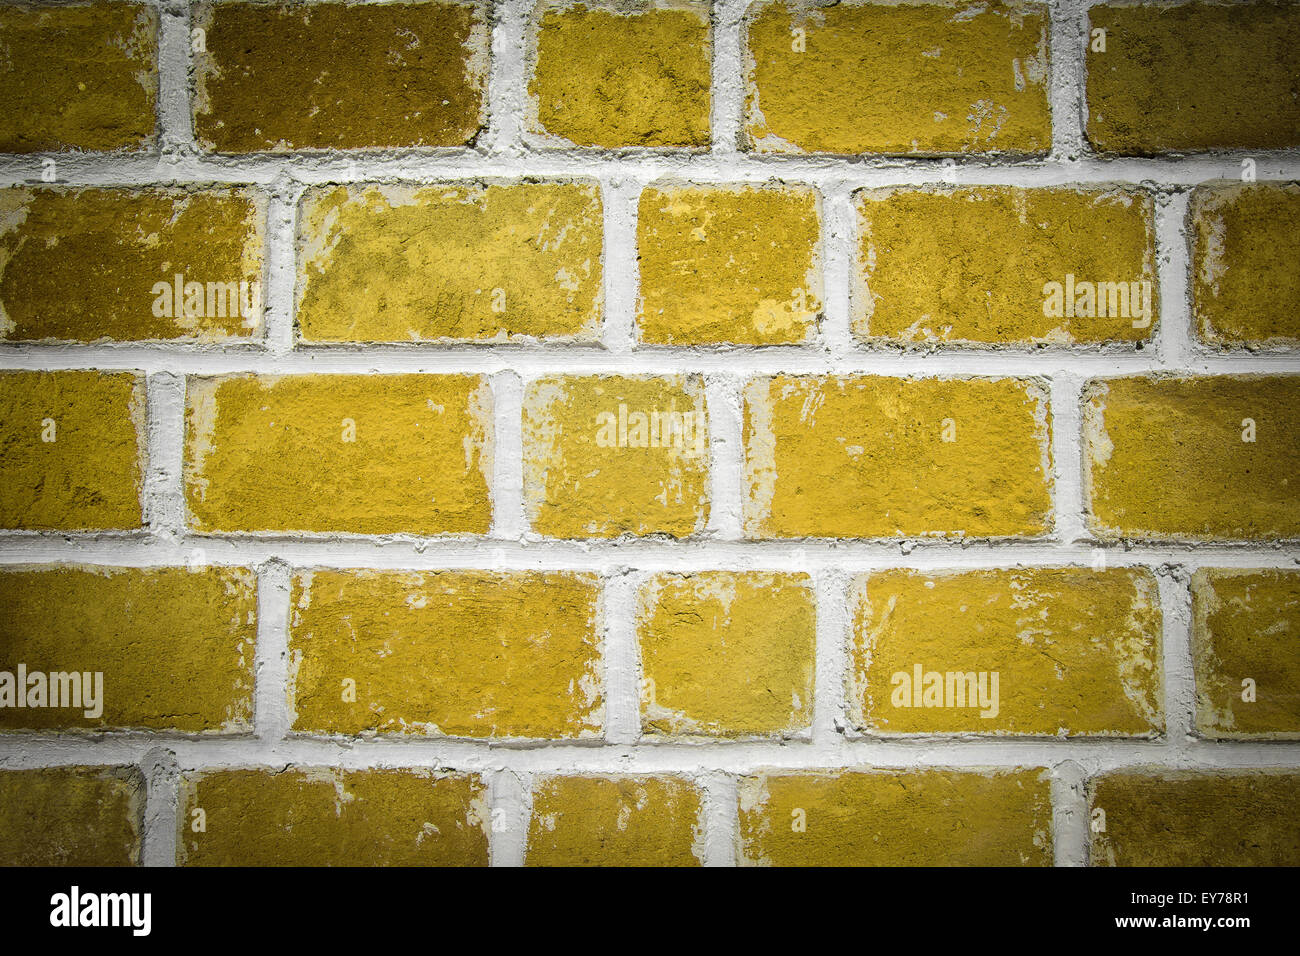 Yellow brick wall background, closeup Stock Photo